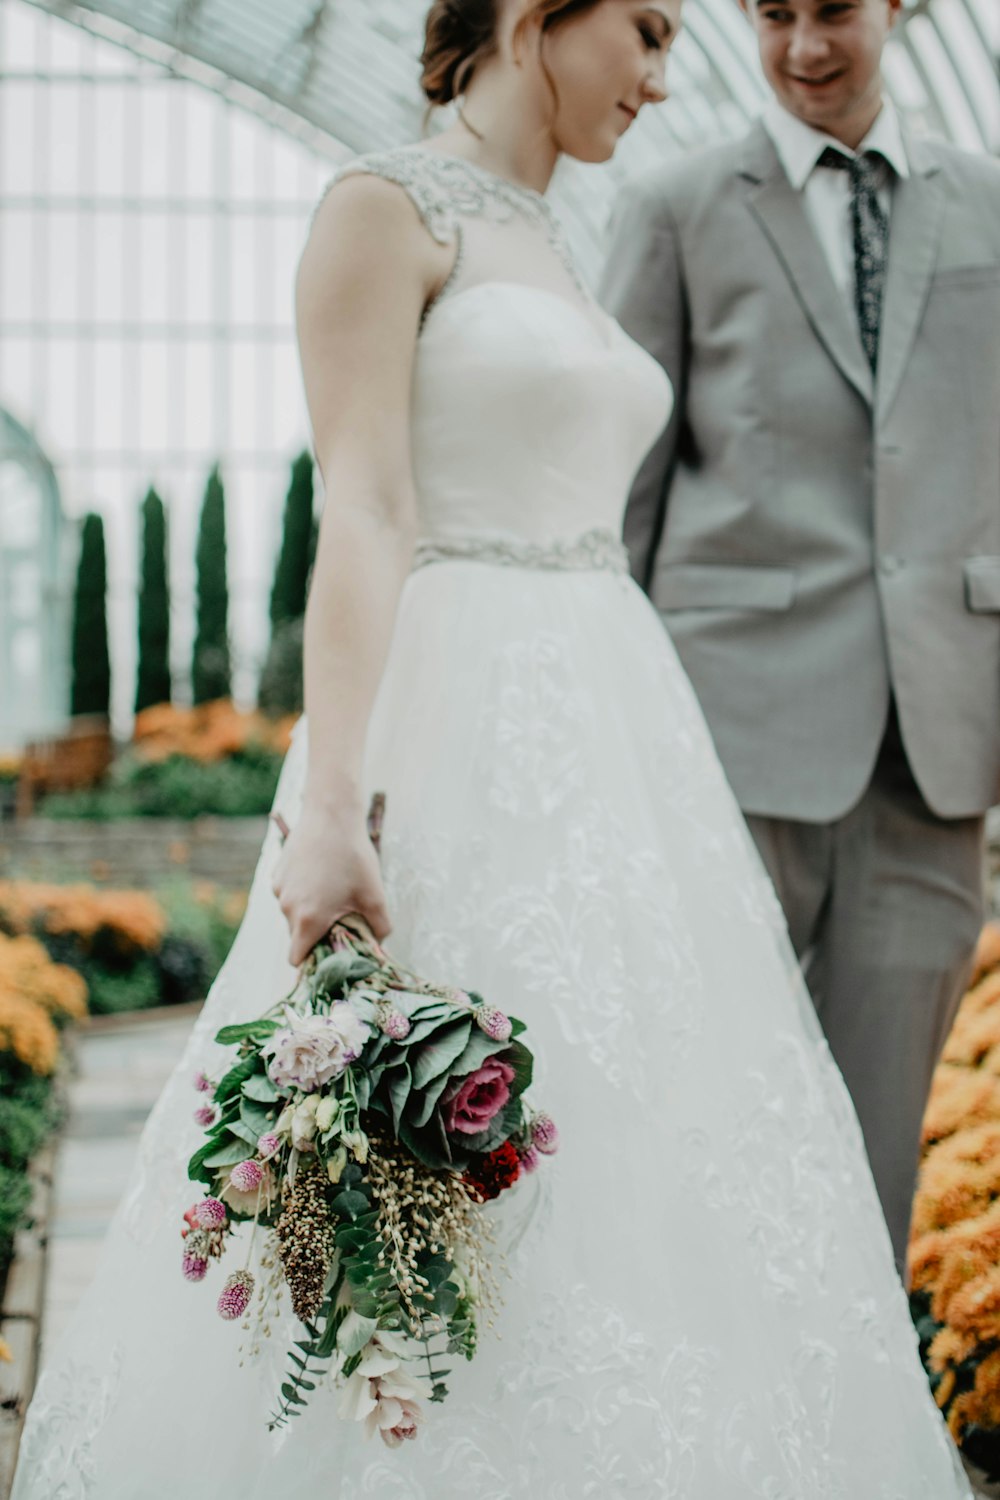 Braut geht mit Bräutigam am Gang und hält Blumenboquet